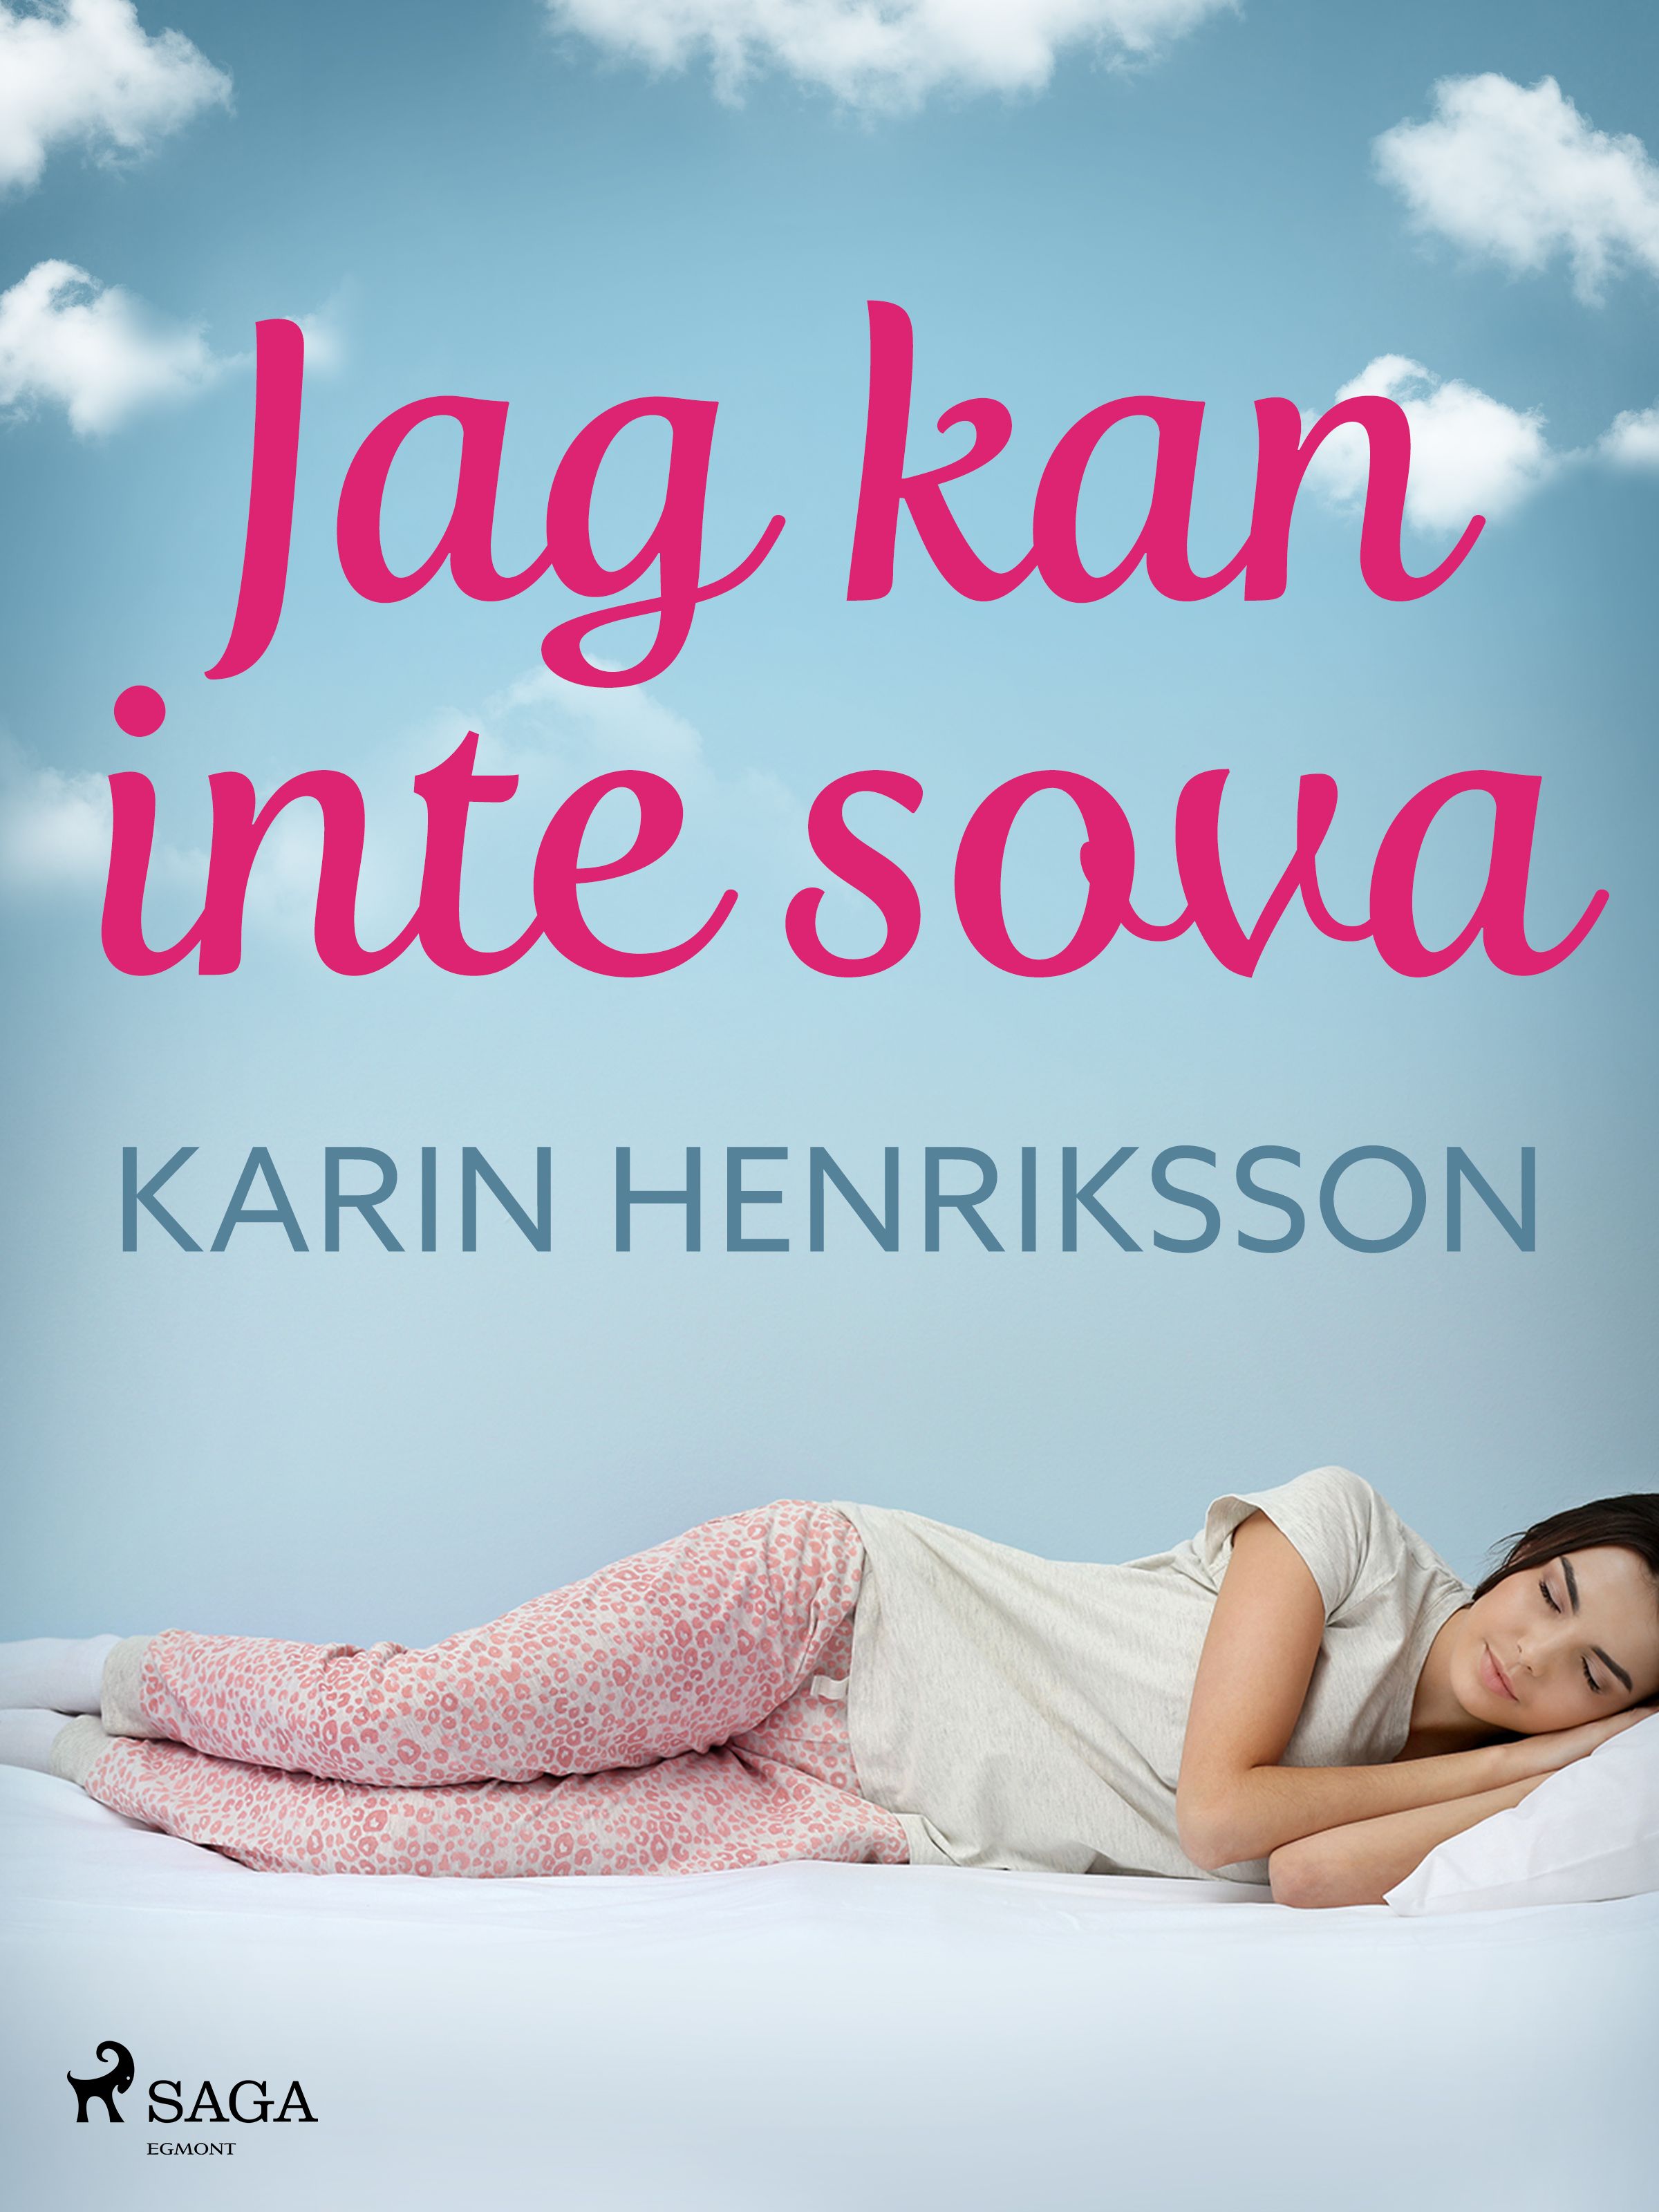 Jag kan inte sova, e-bog af Karin Henriksson